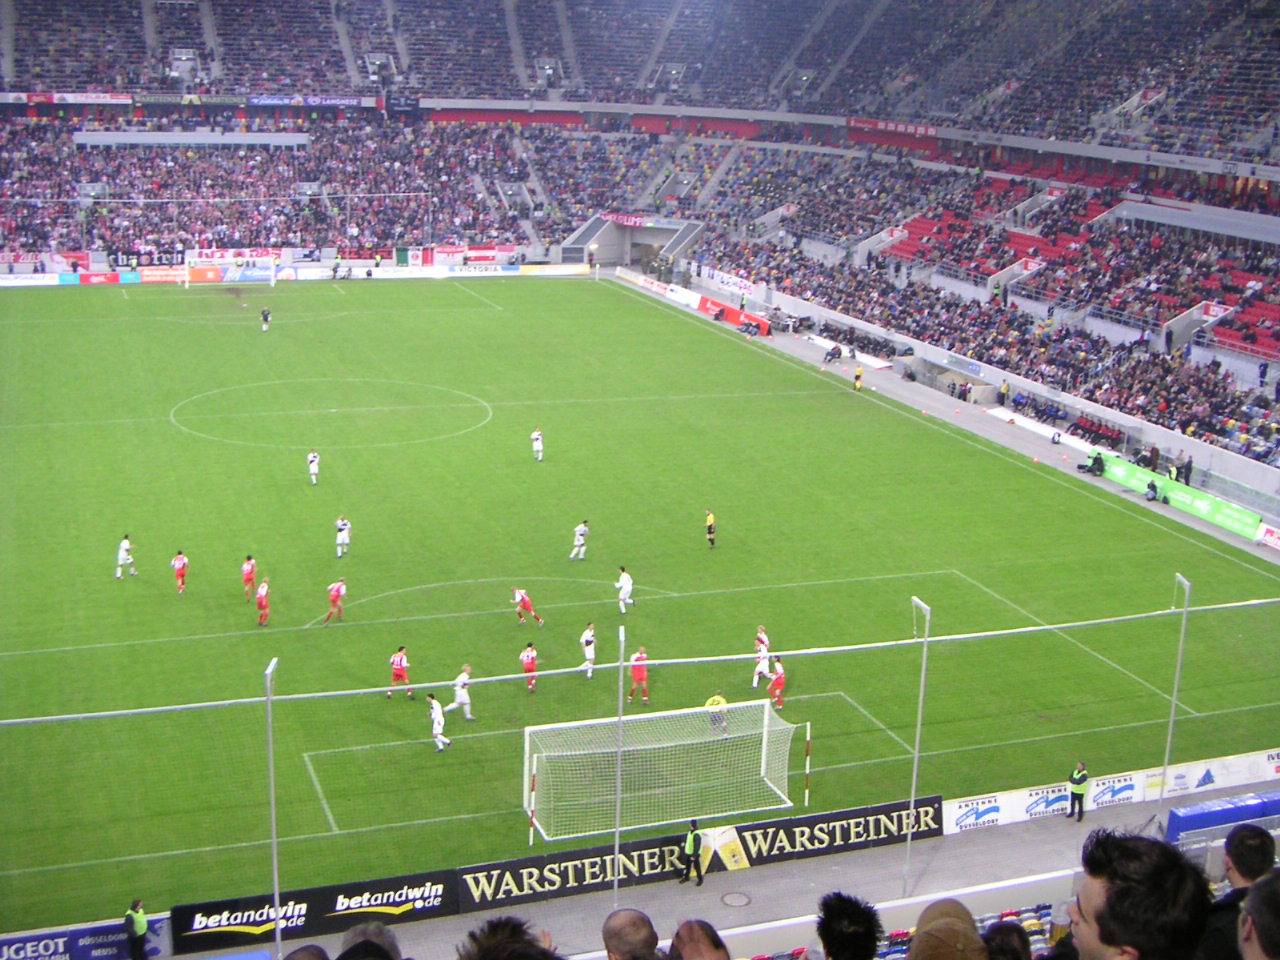 Ein Bild von einem Fußballplatz